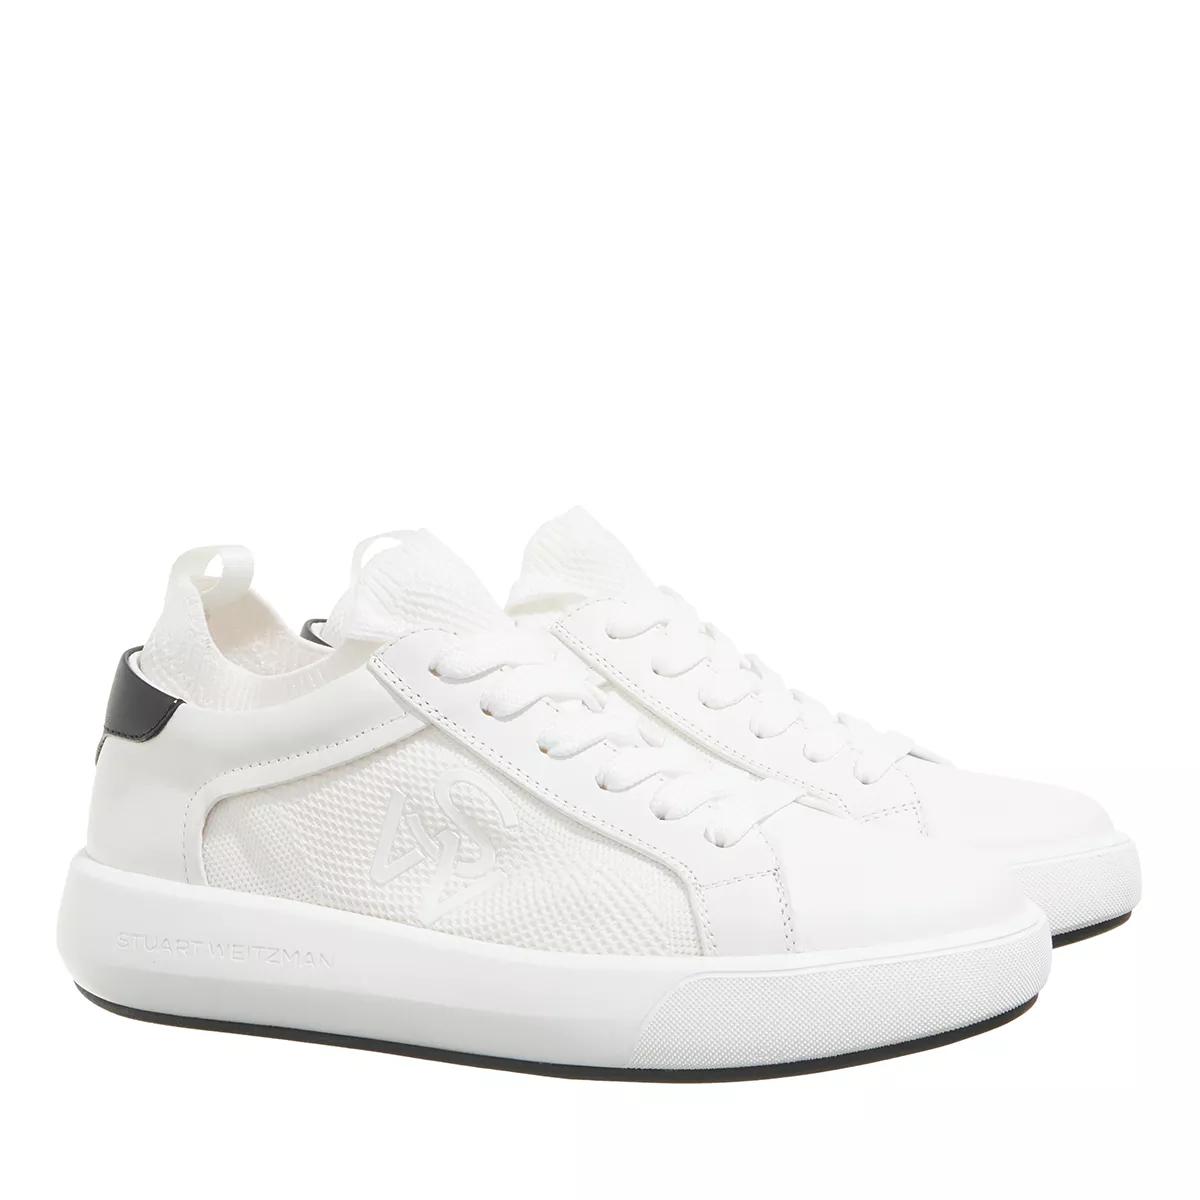 Stuart Weitzman Sneakers - 5050 PRO - Gr. 39 (EU) - in Weiß - für Damen von Stuart Weitzman